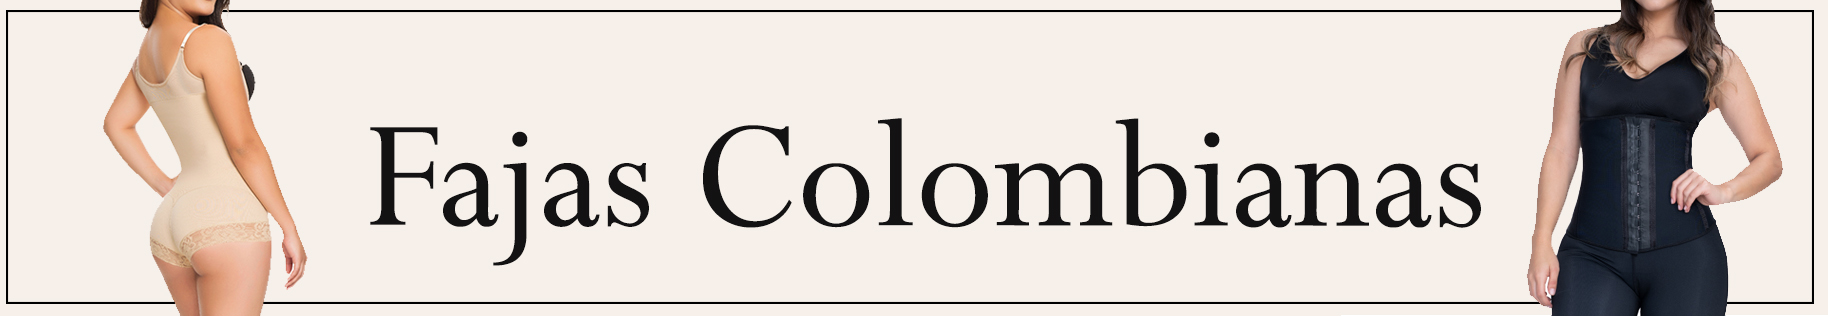 fajas colombianas en españa